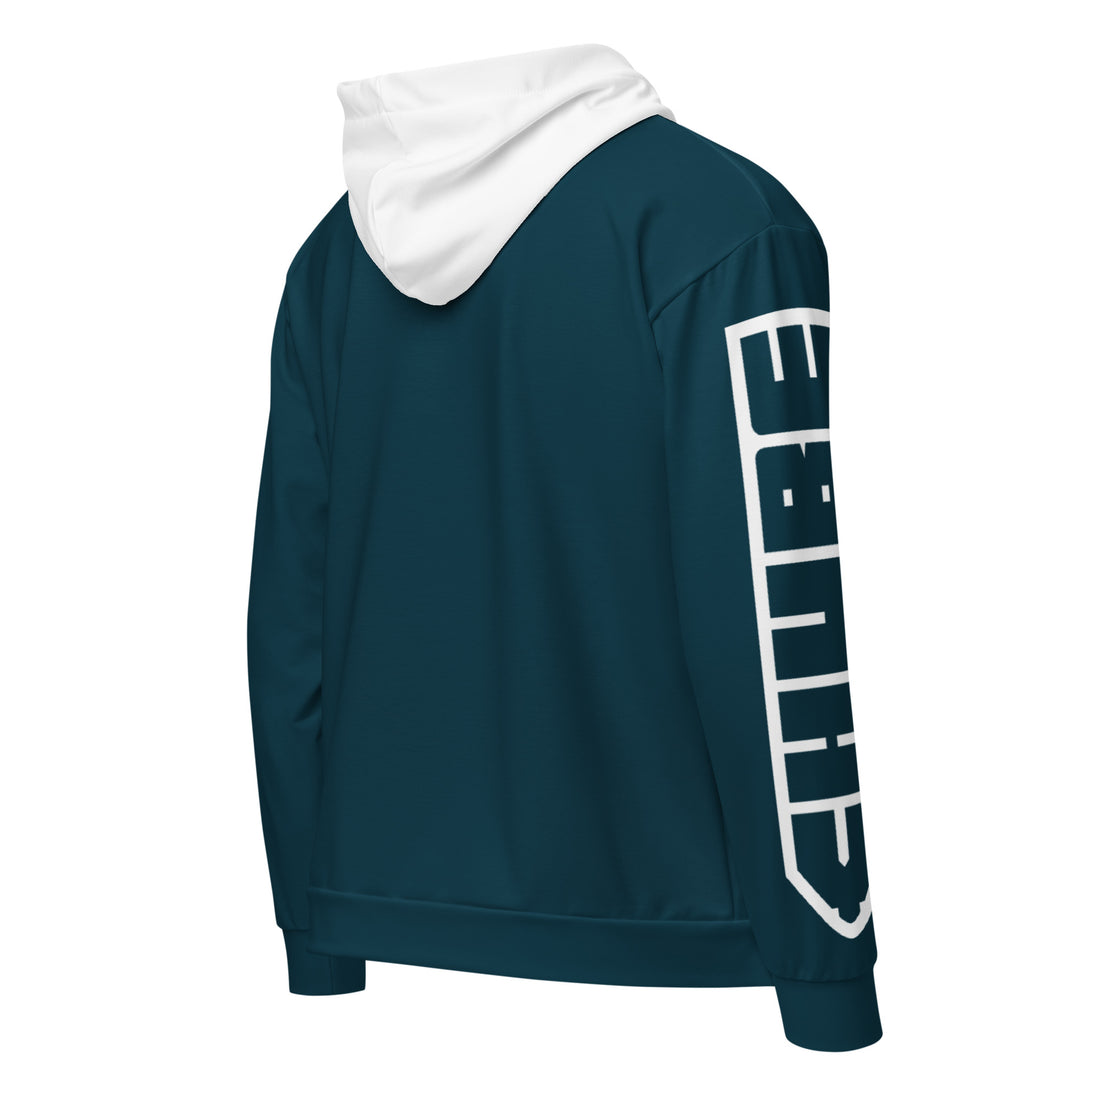 Unisex zip teal Chube hoodie